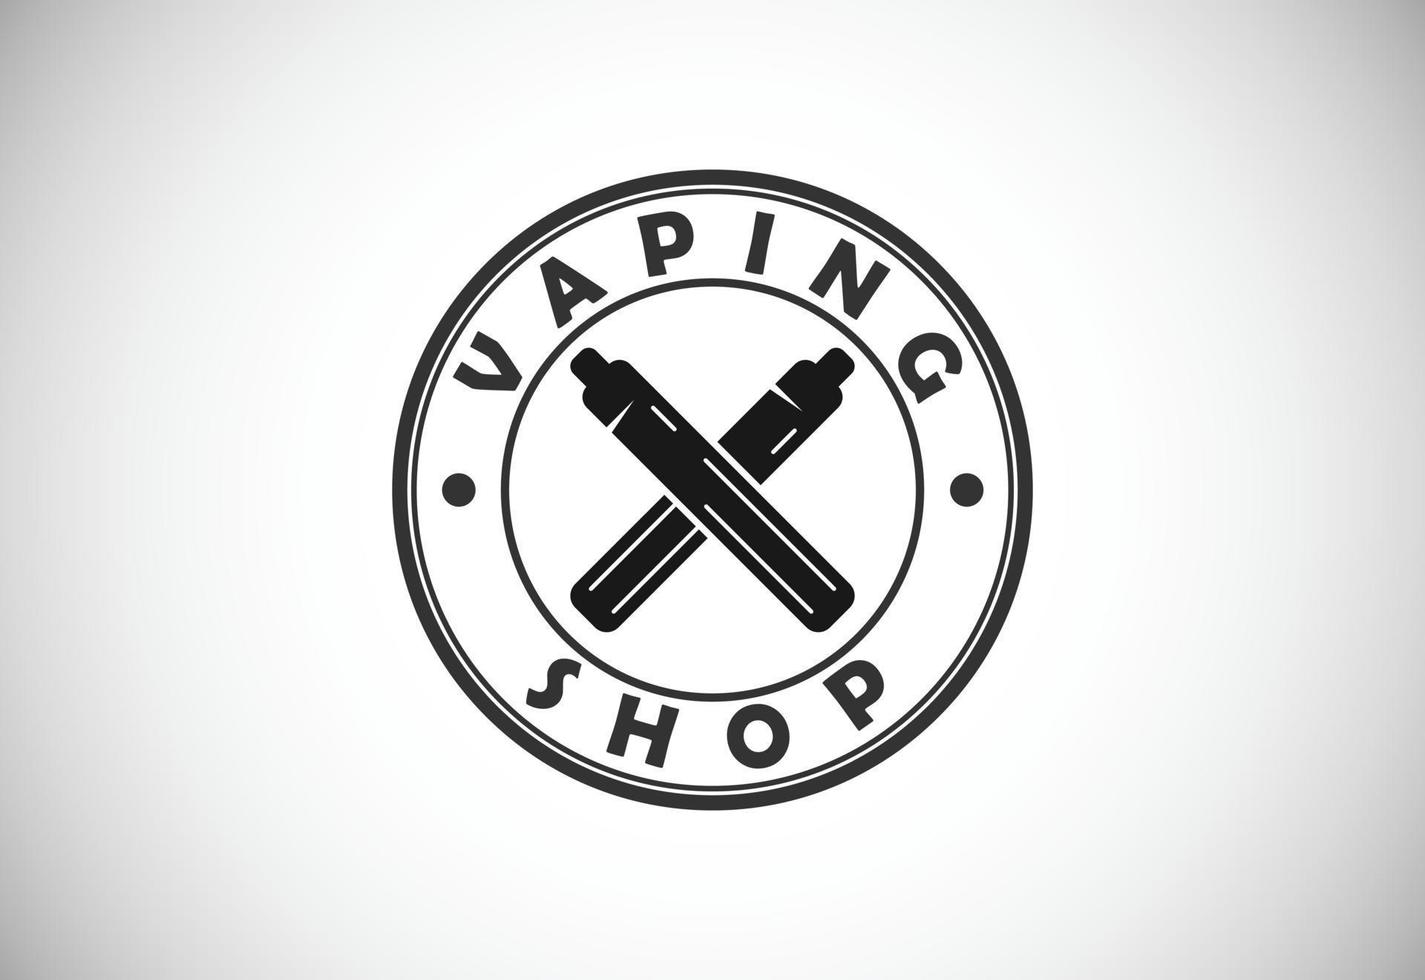 vape, modello di progettazione del logo di sigaretta elettronica. illustrazione vettoriale del logo del vaporizzatore elettronico del negozio di vape.